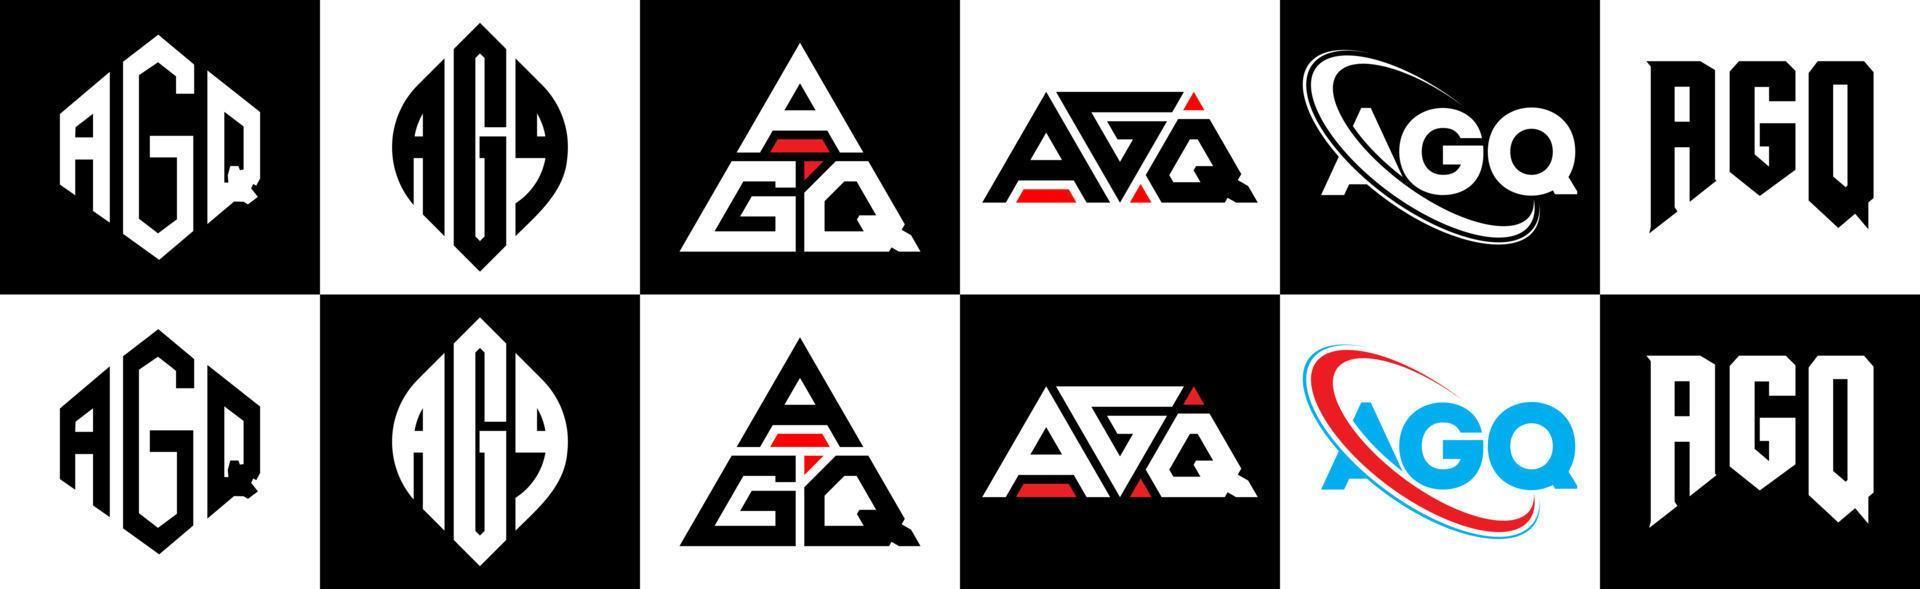 création de logo de lettre agq en six styles. polygone agq, cercle, triangle, hexagone, style plat et simple avec logo de lettre de variation de couleur noir et blanc dans un plan de travail. logo agq minimaliste et classique vecteur